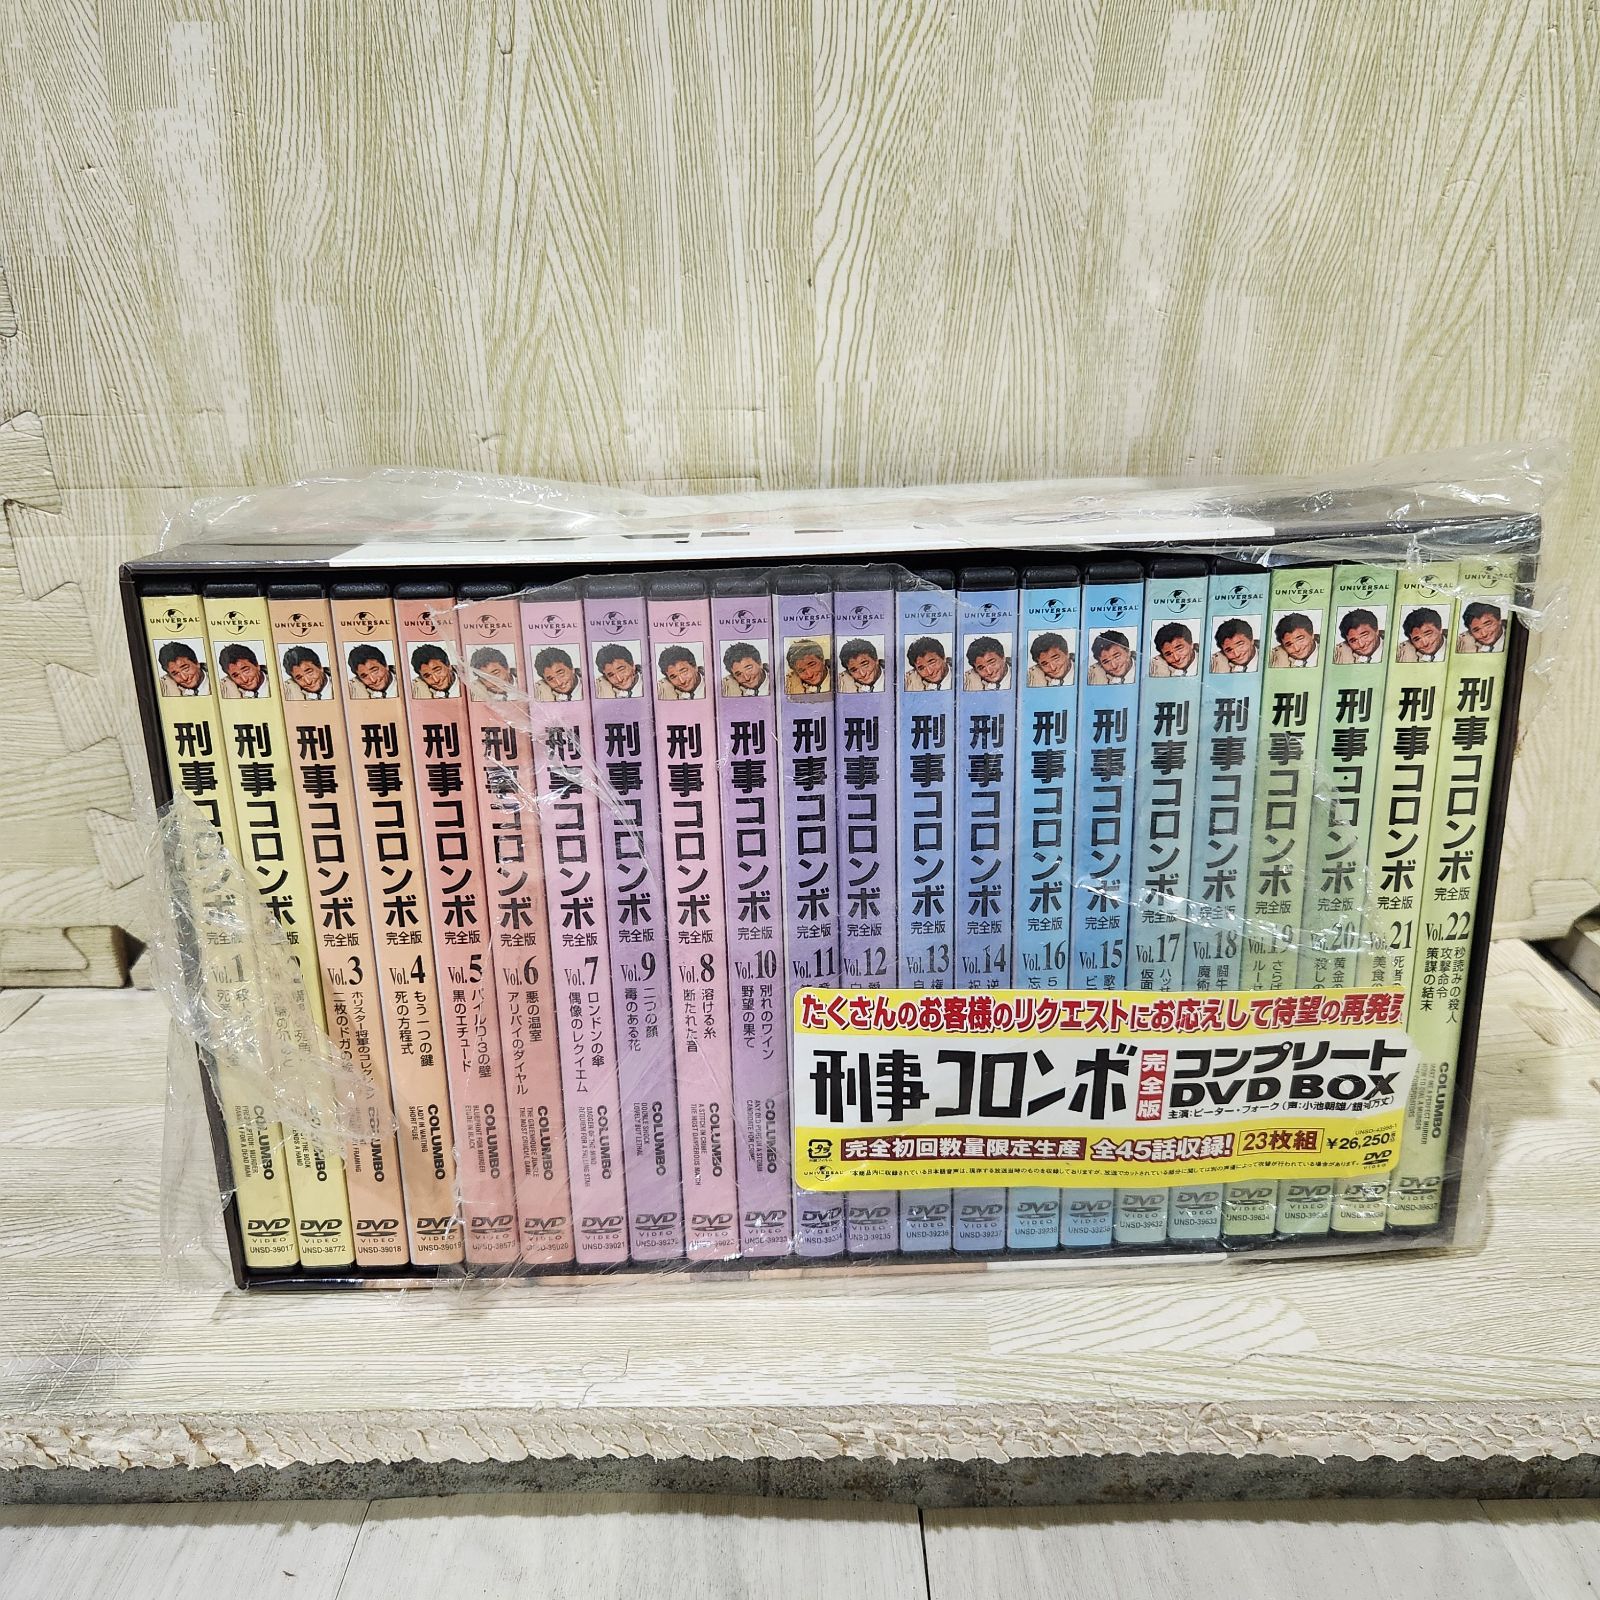 (未開封) 刑事コロンボ完全版 コンプリート DVD-BOX〈23枚組〉